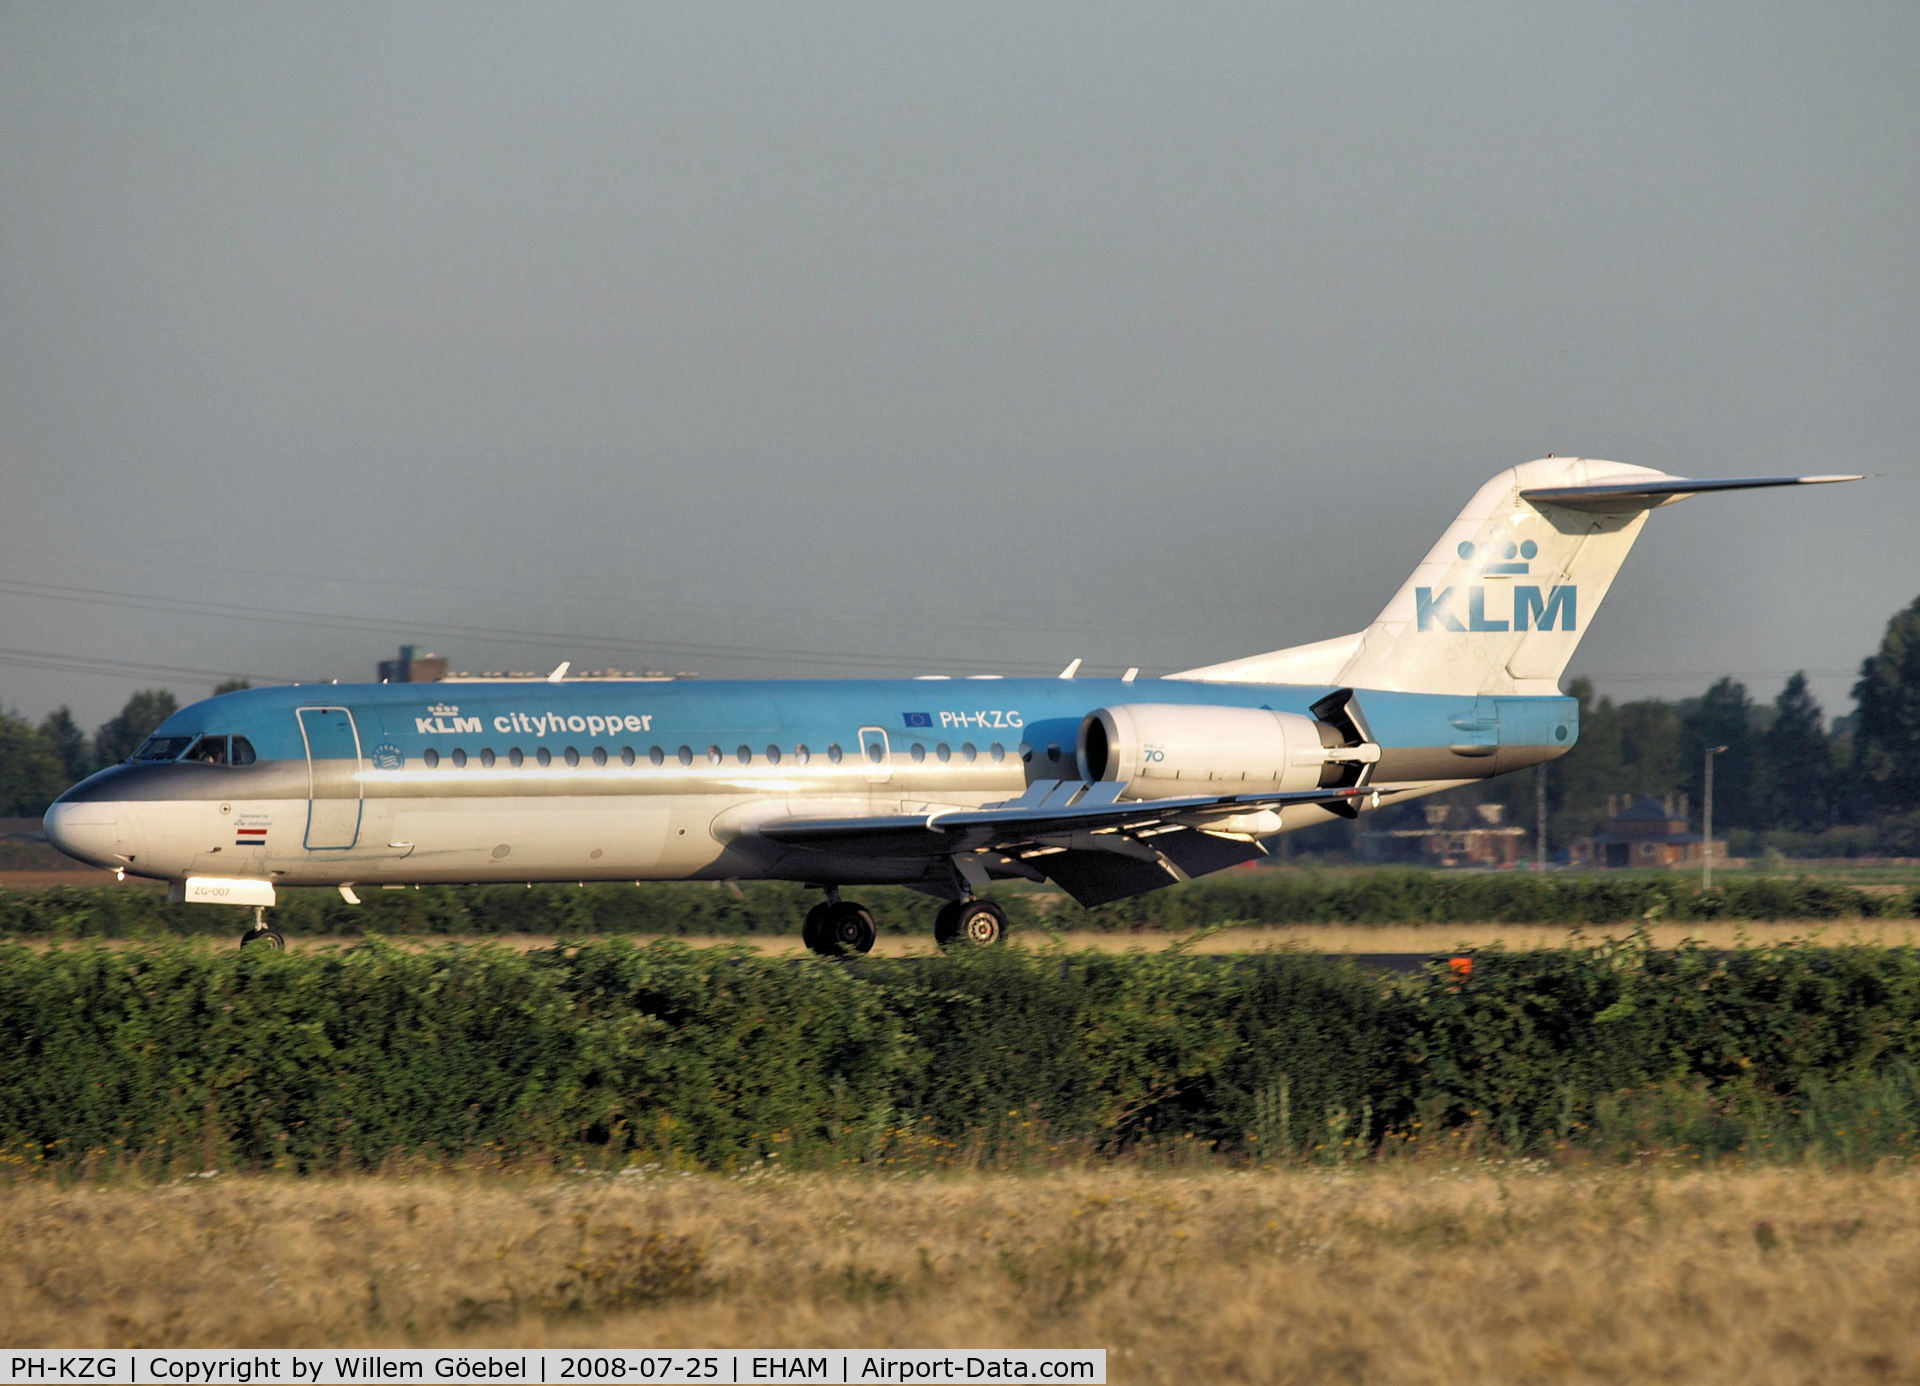 PH-KZG, 1996 Fokker 70 (F-28-0070) C/N 11578, Landing on runway R18 of Schiphol Airport